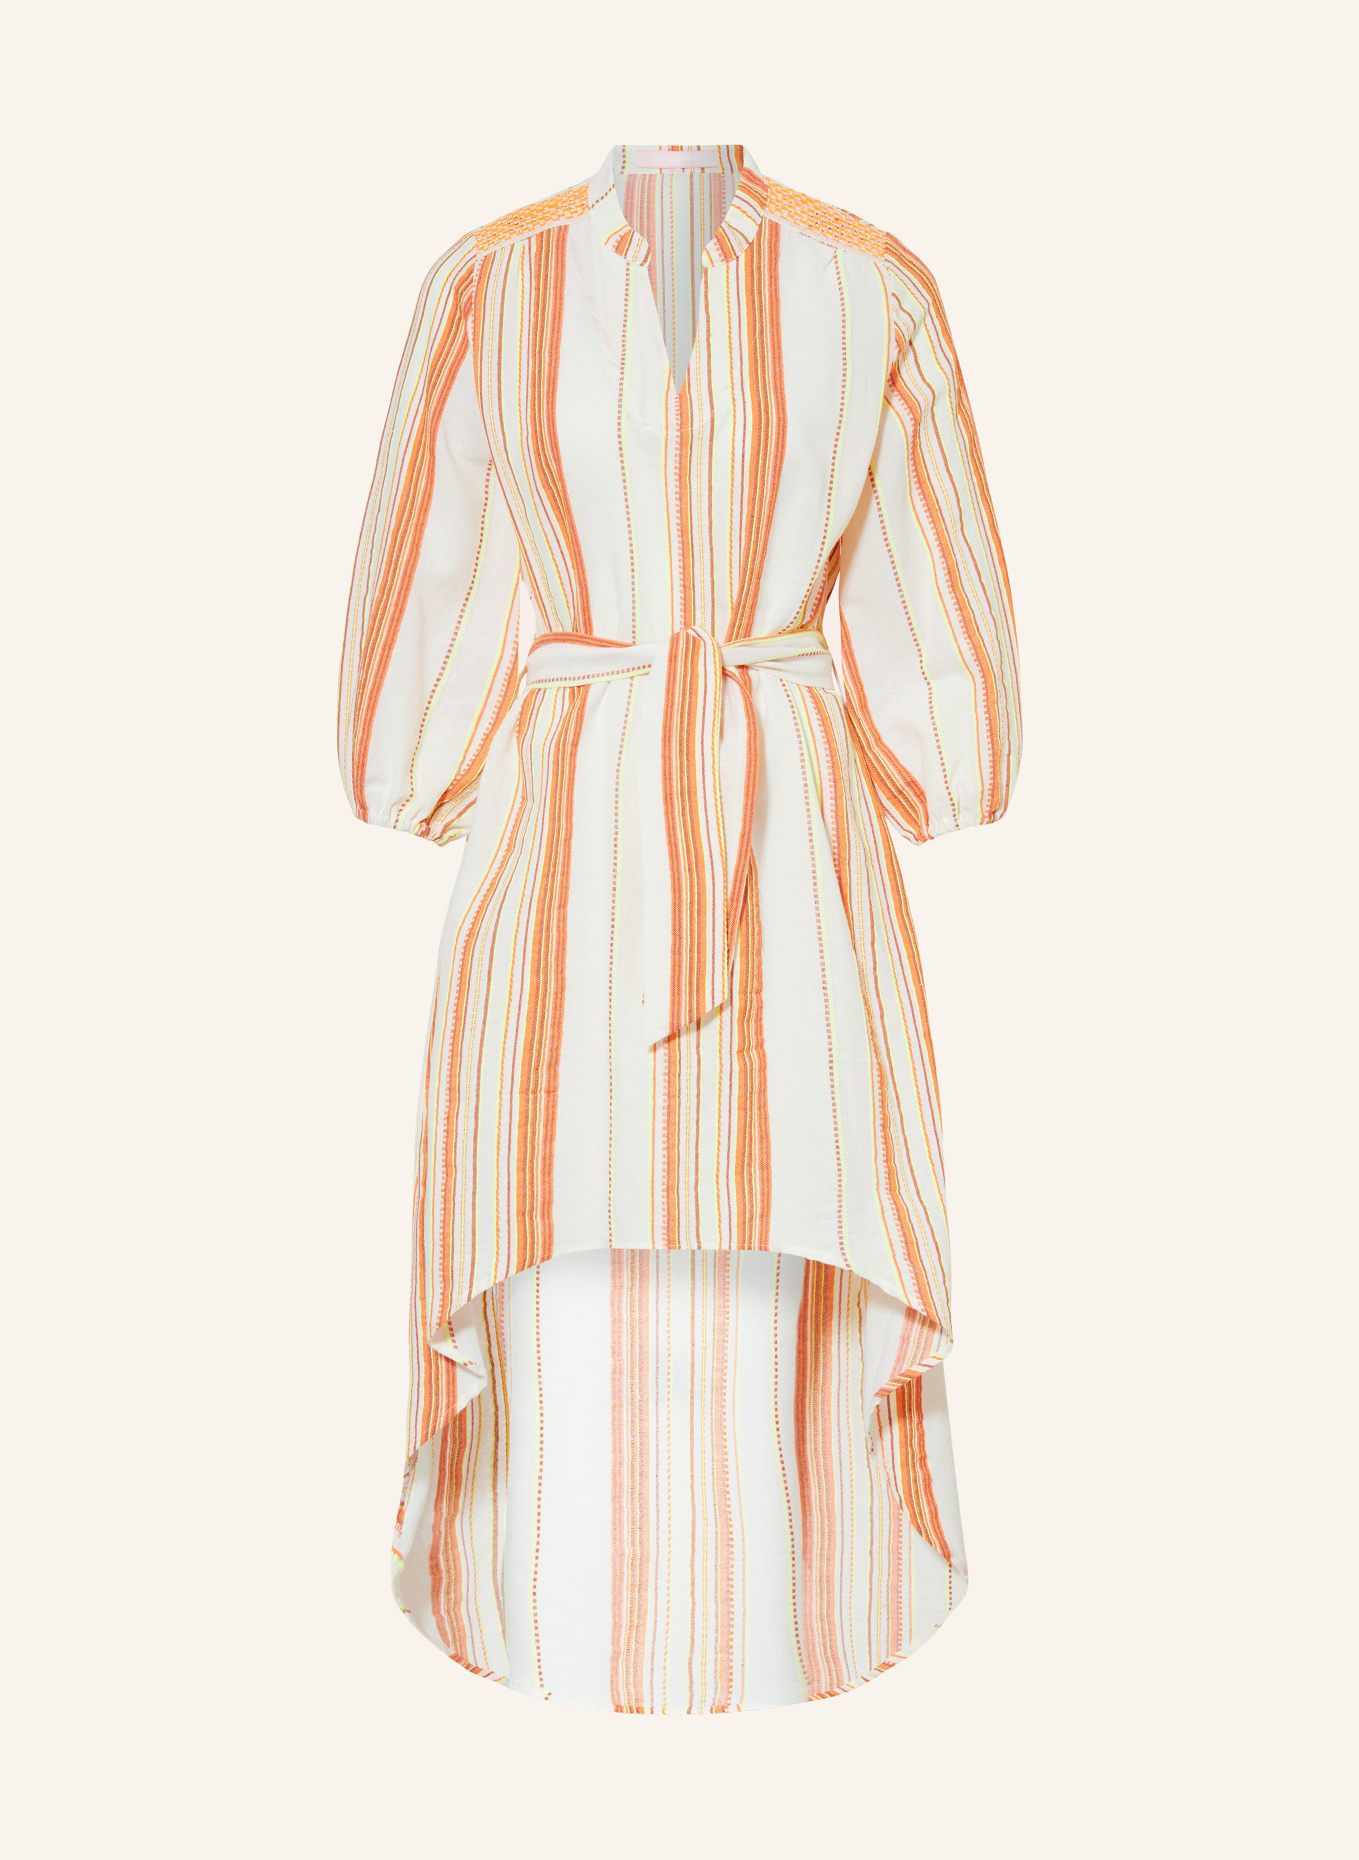 VALÉRIE KHALFON Kleid MIRANDA mit 3/4-Arm, Farbe: ORANGE/ NEONGELB (Bild 1)